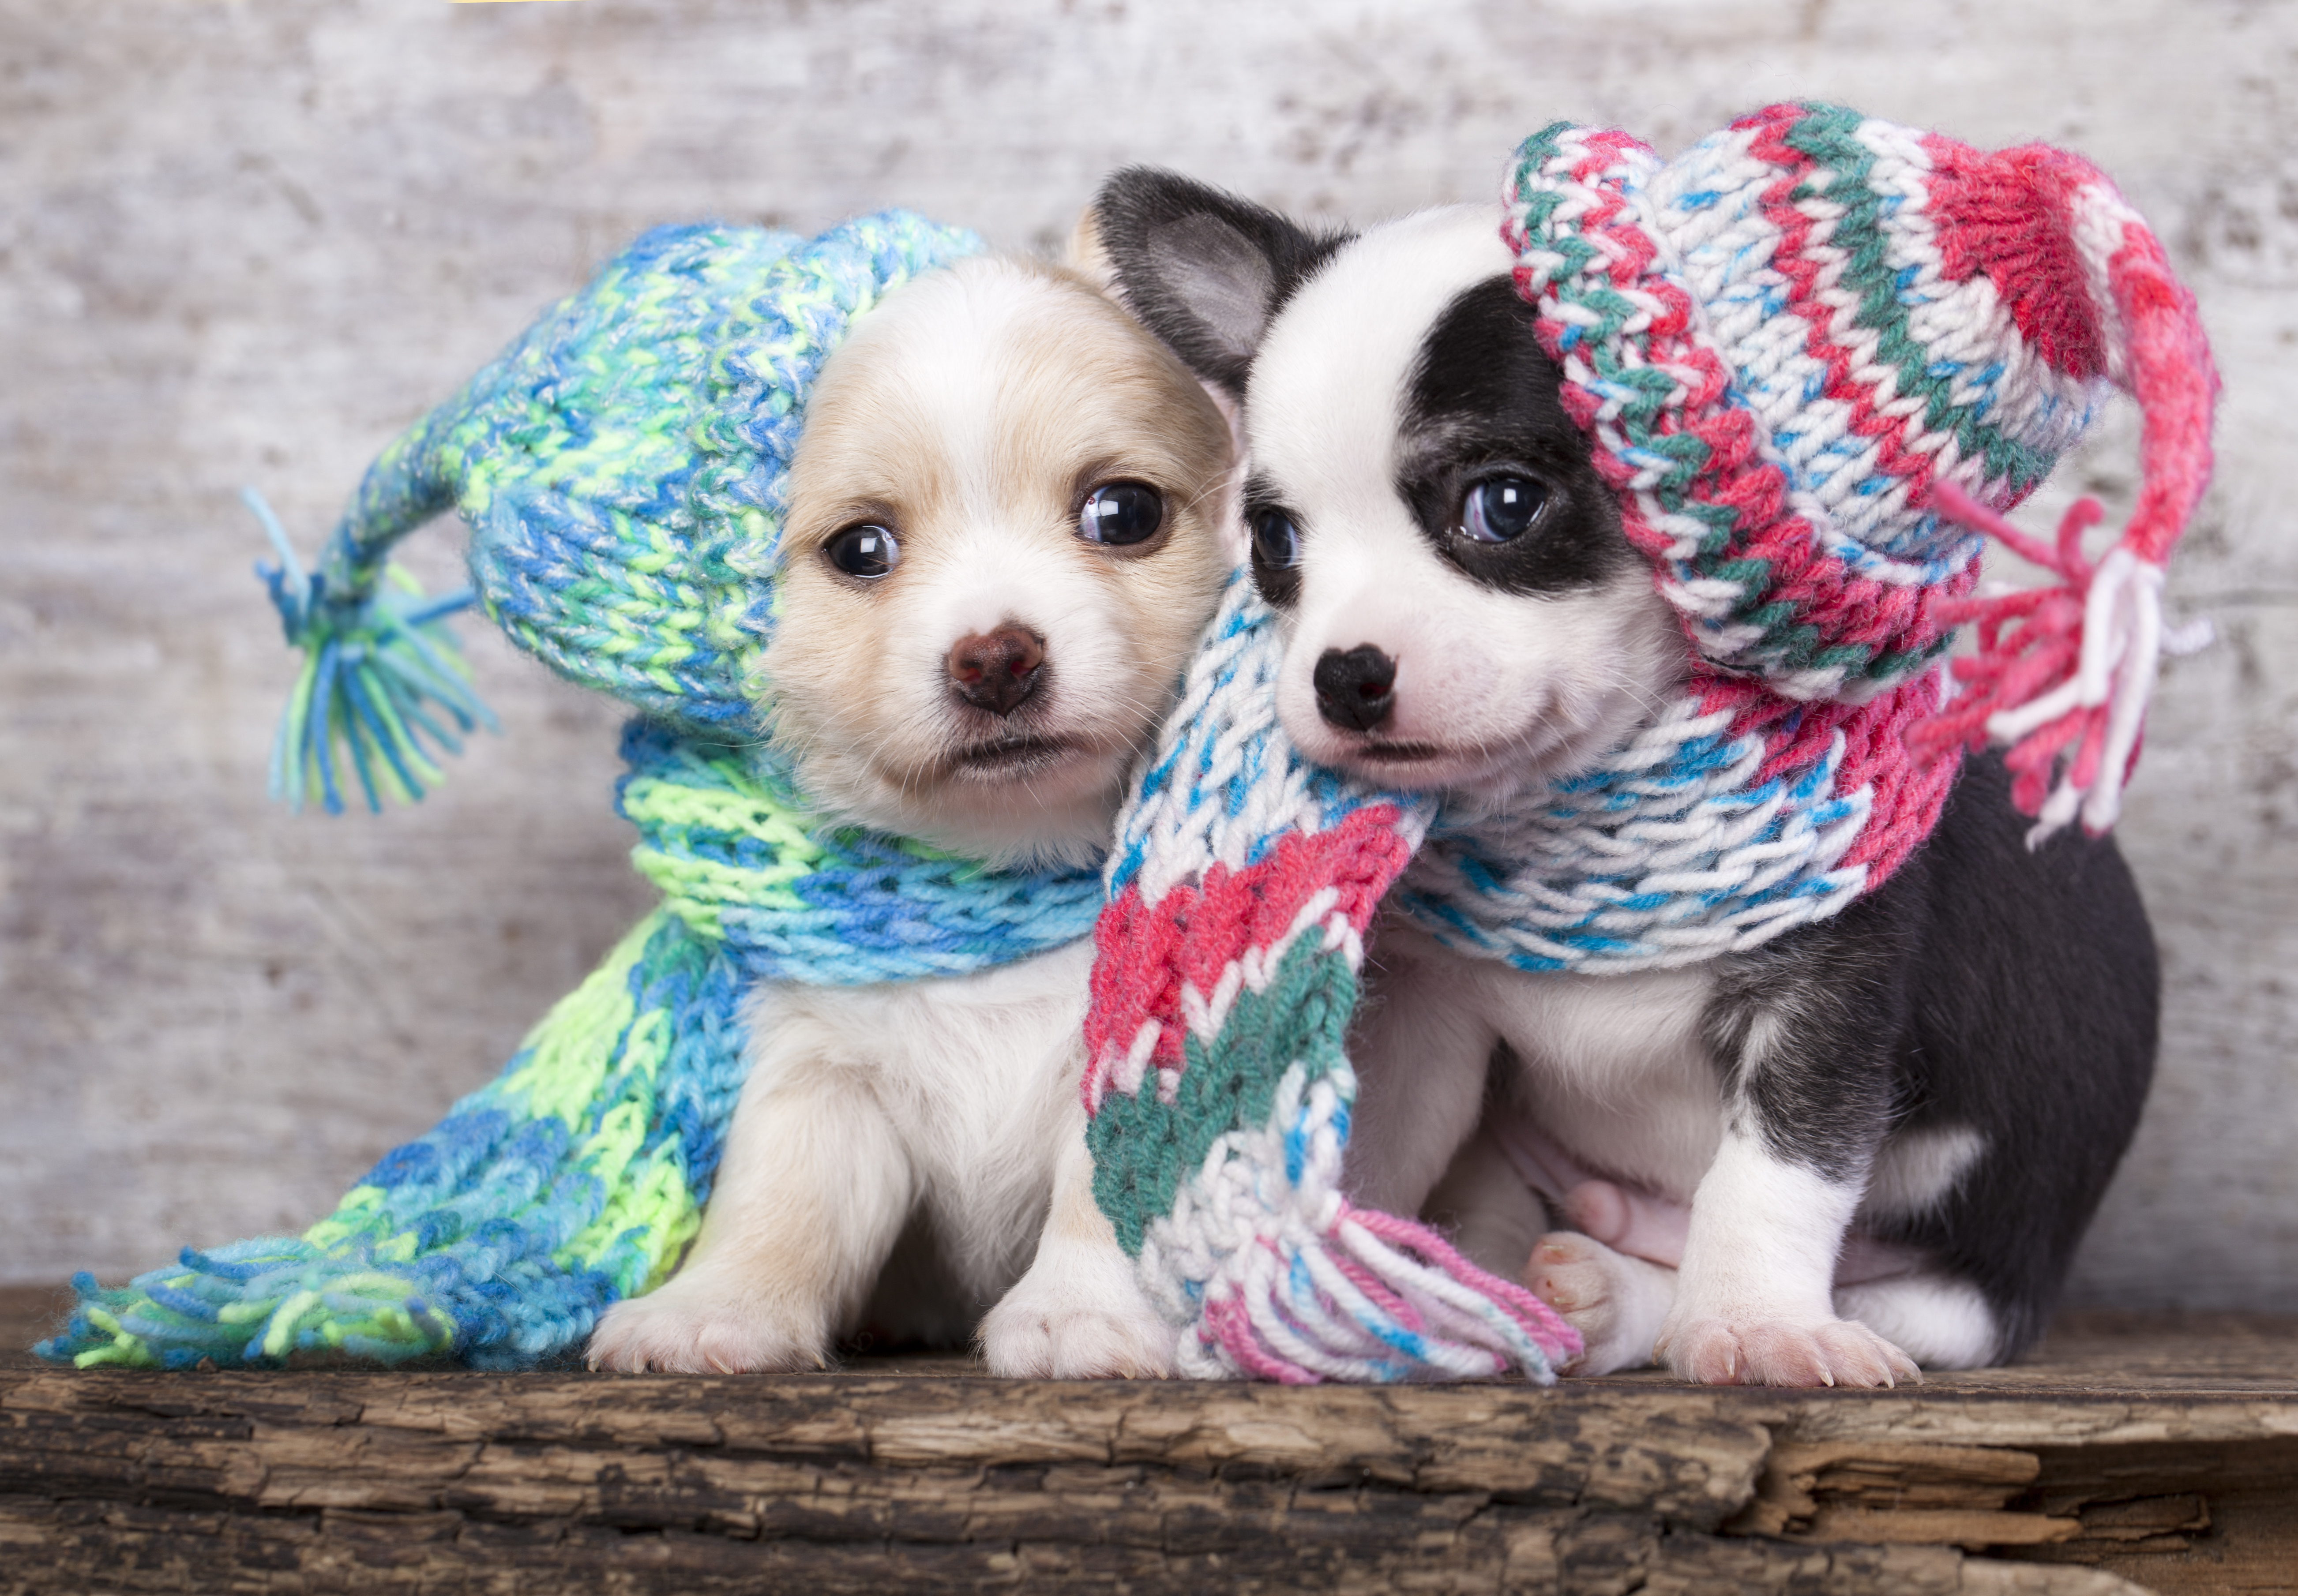 Las mascotas también sufren en las gélidas temperaturas. Ve aquí algunos consejos de cómo protegerlos y evitar que se enfermen.